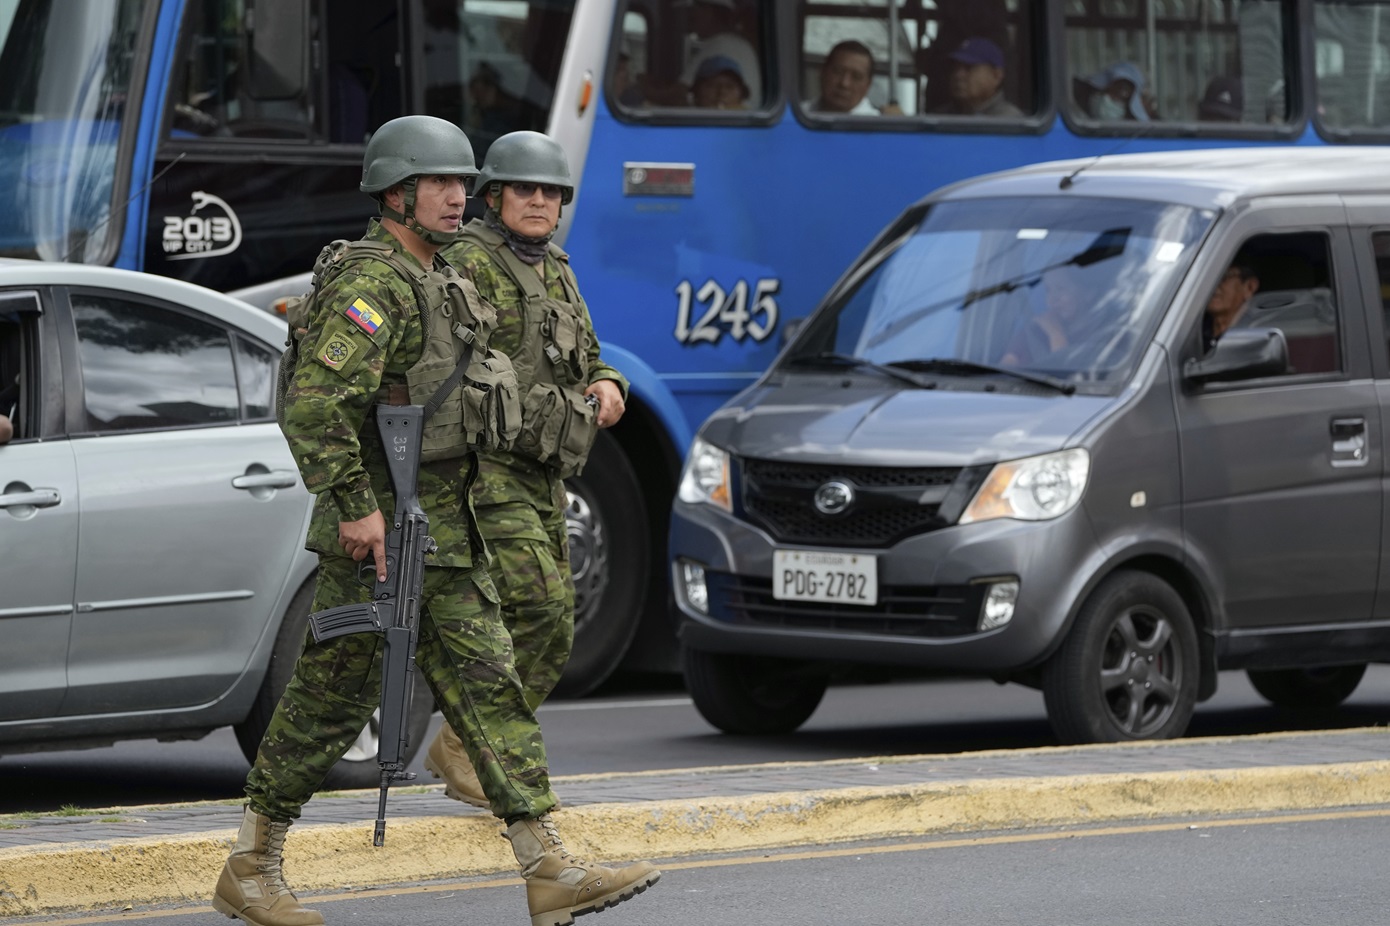 Ανάκτηση 70 σπιτιών από τις δυνάμεις ασφαλείας στον Ισημερινό – Είχαν καταληφθεί από συμμορίες